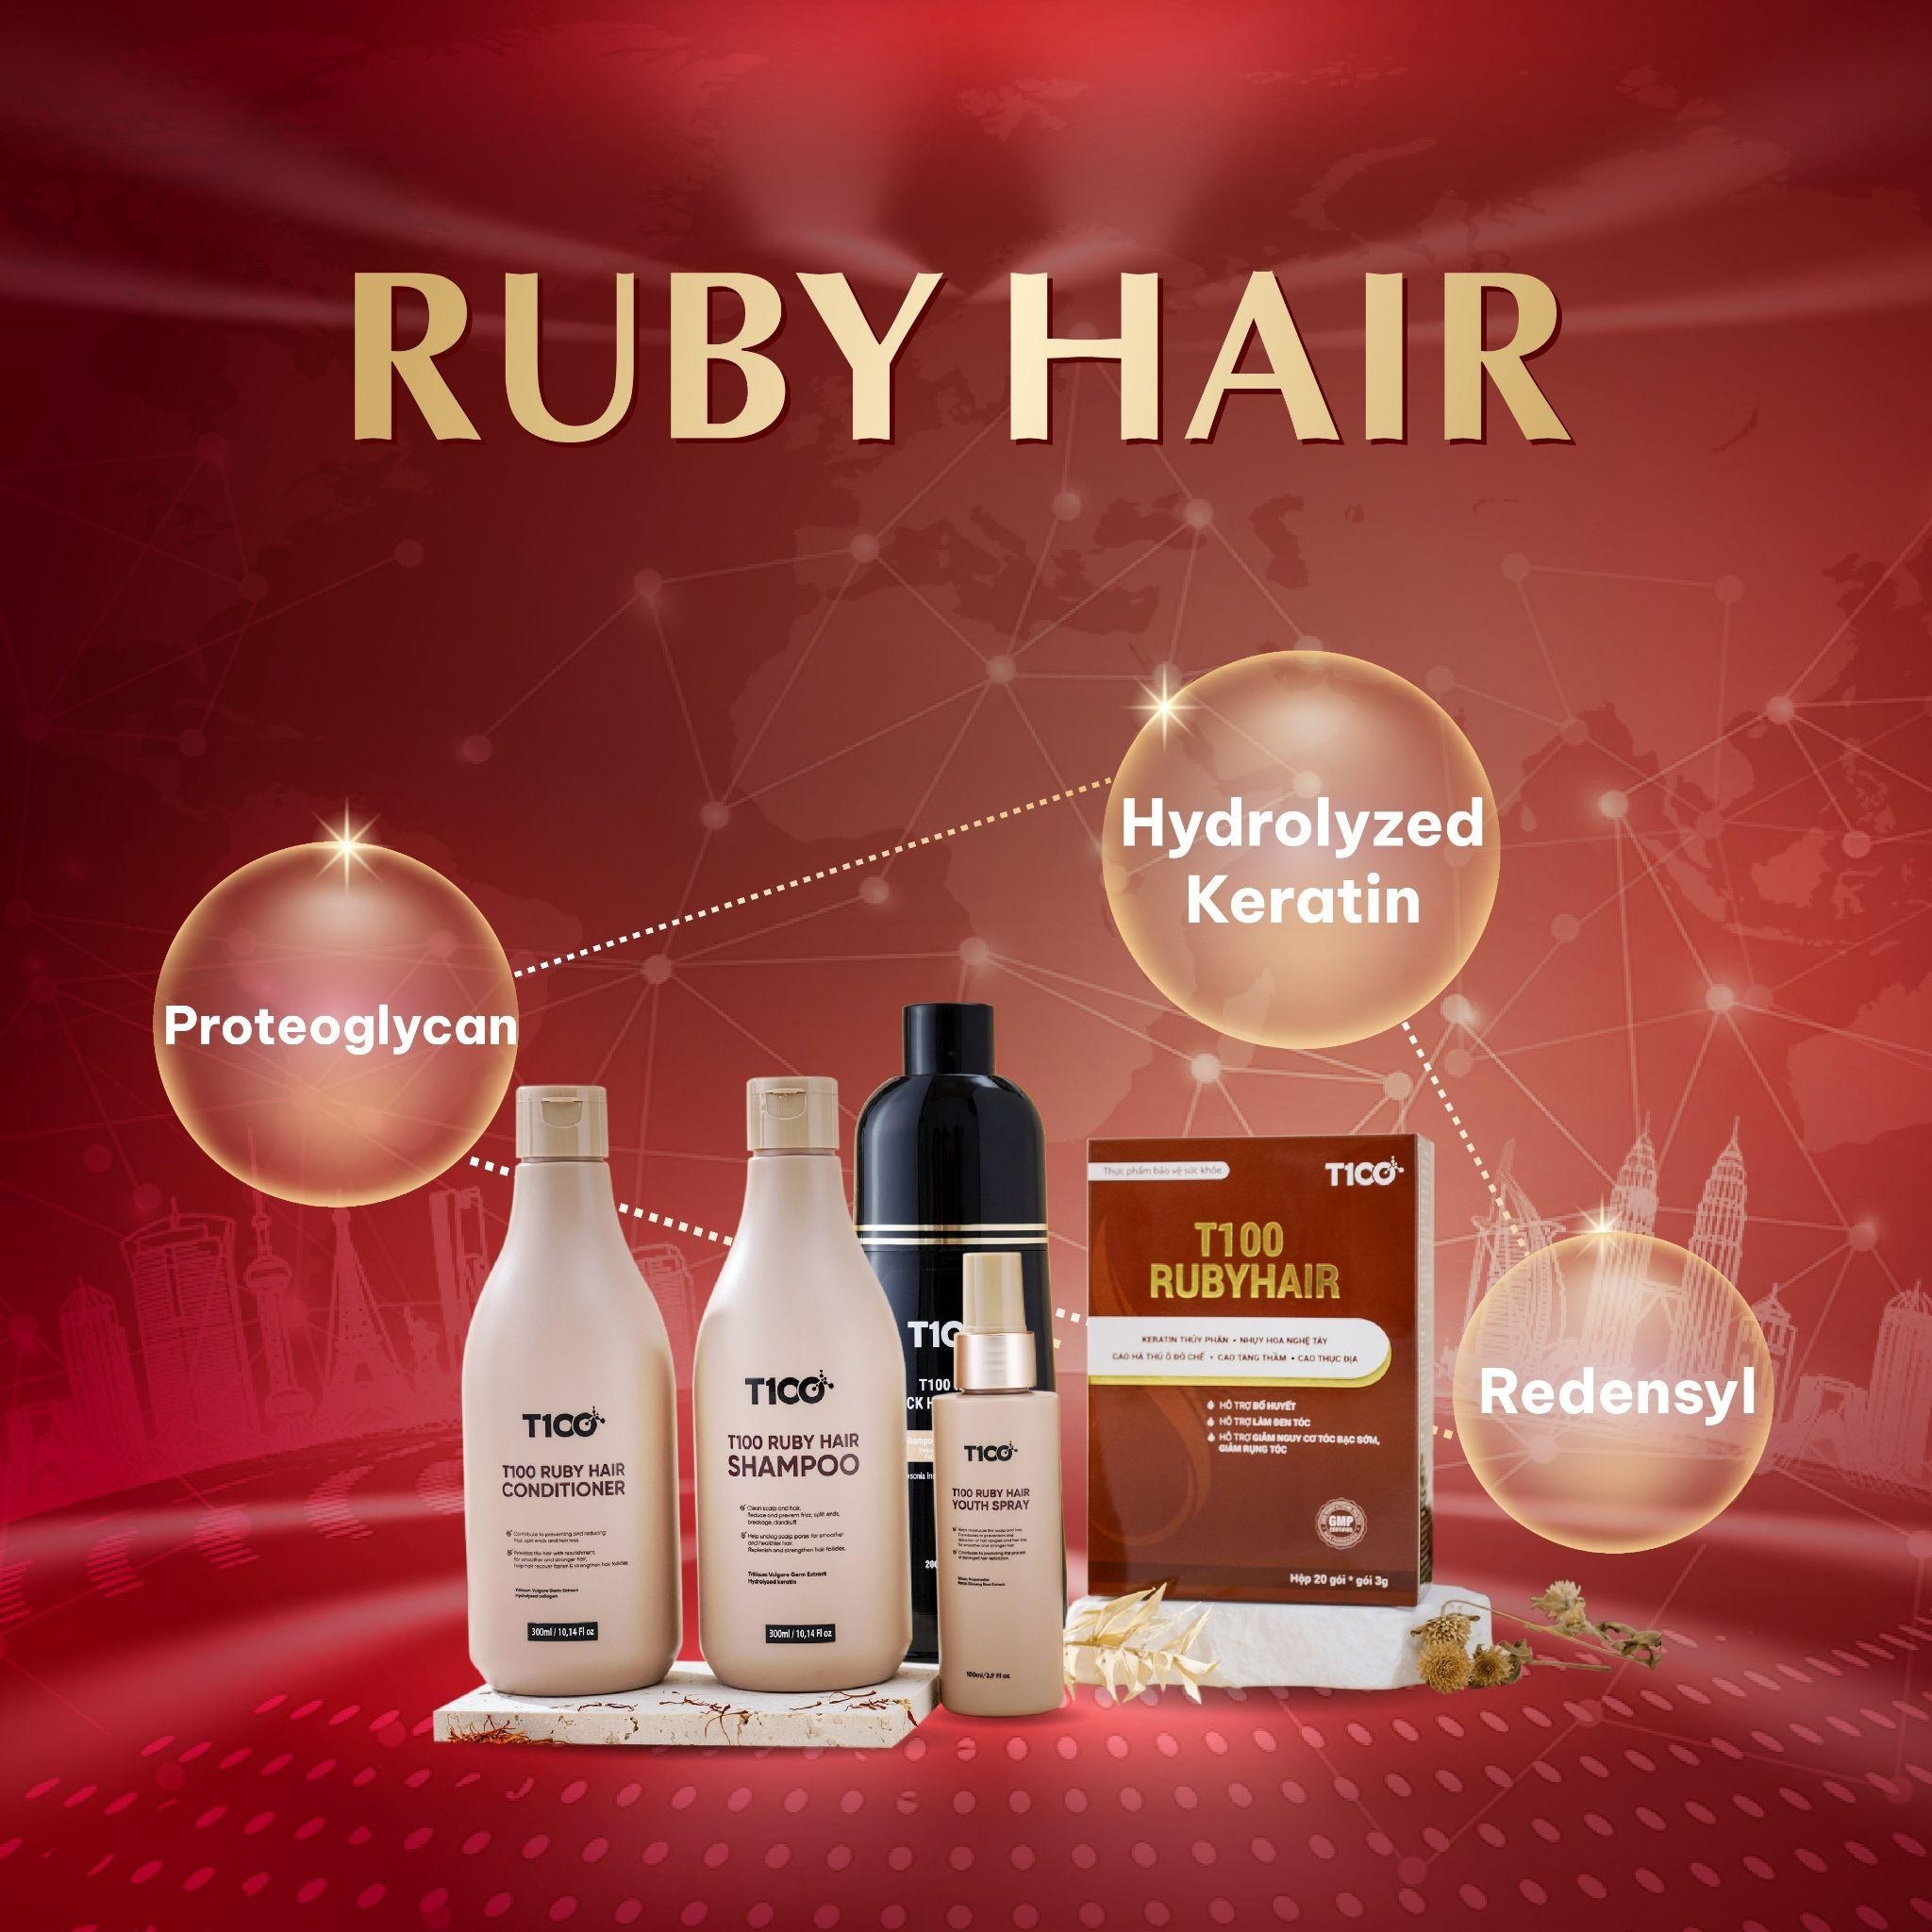 Bộ sản phẩm Ruby Hair ứng dụng công nghệ Hydrolyzed Keratin chăm sóc tóc toàn diện - 3